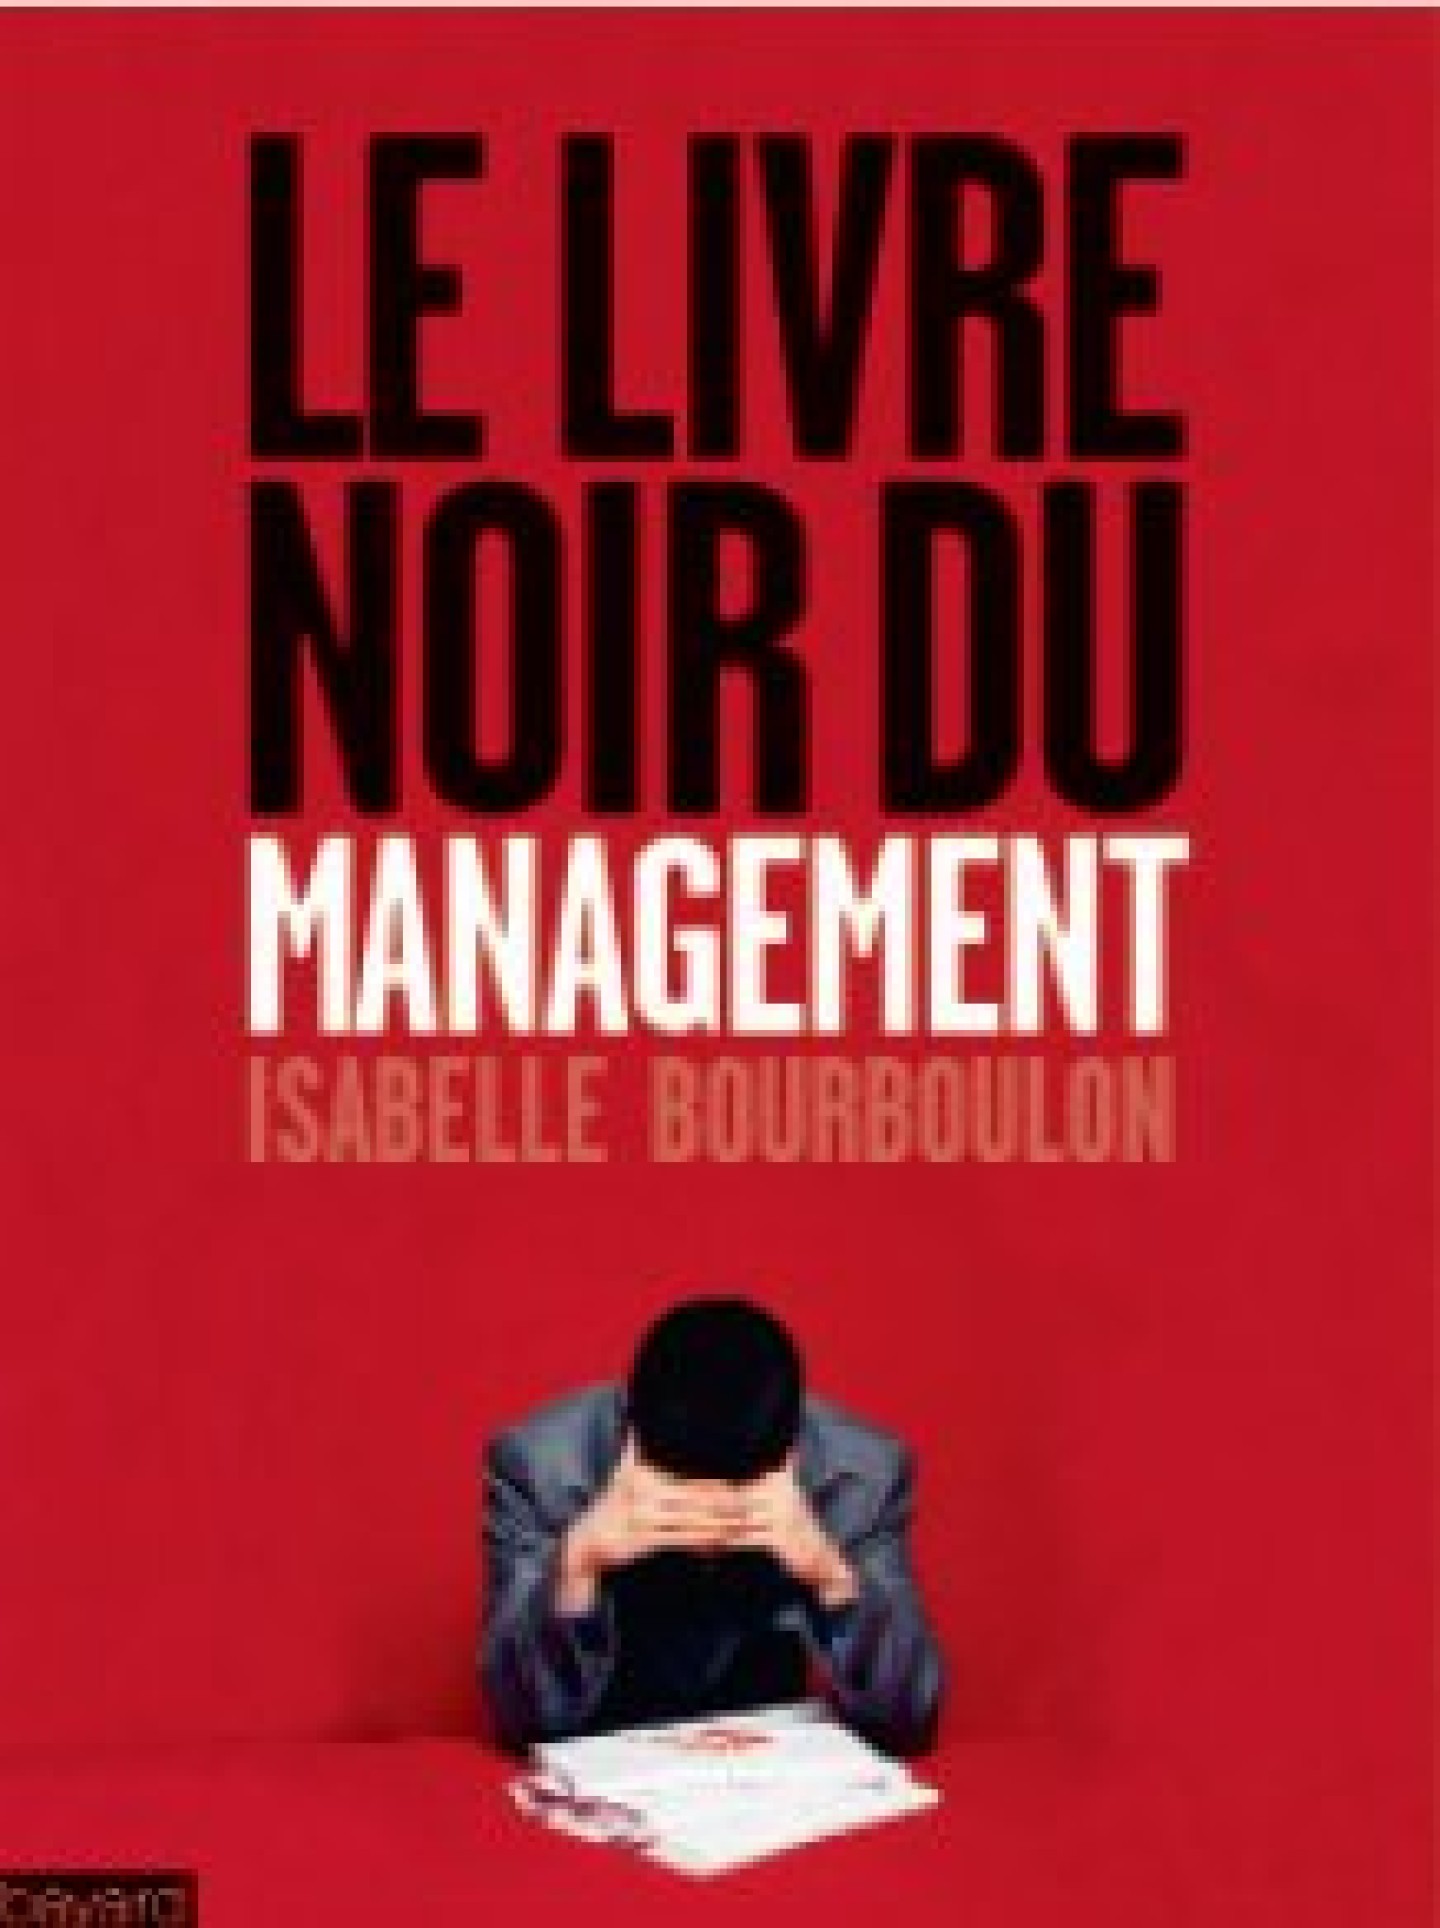 Livre noir du management Isabelle Bourboulon